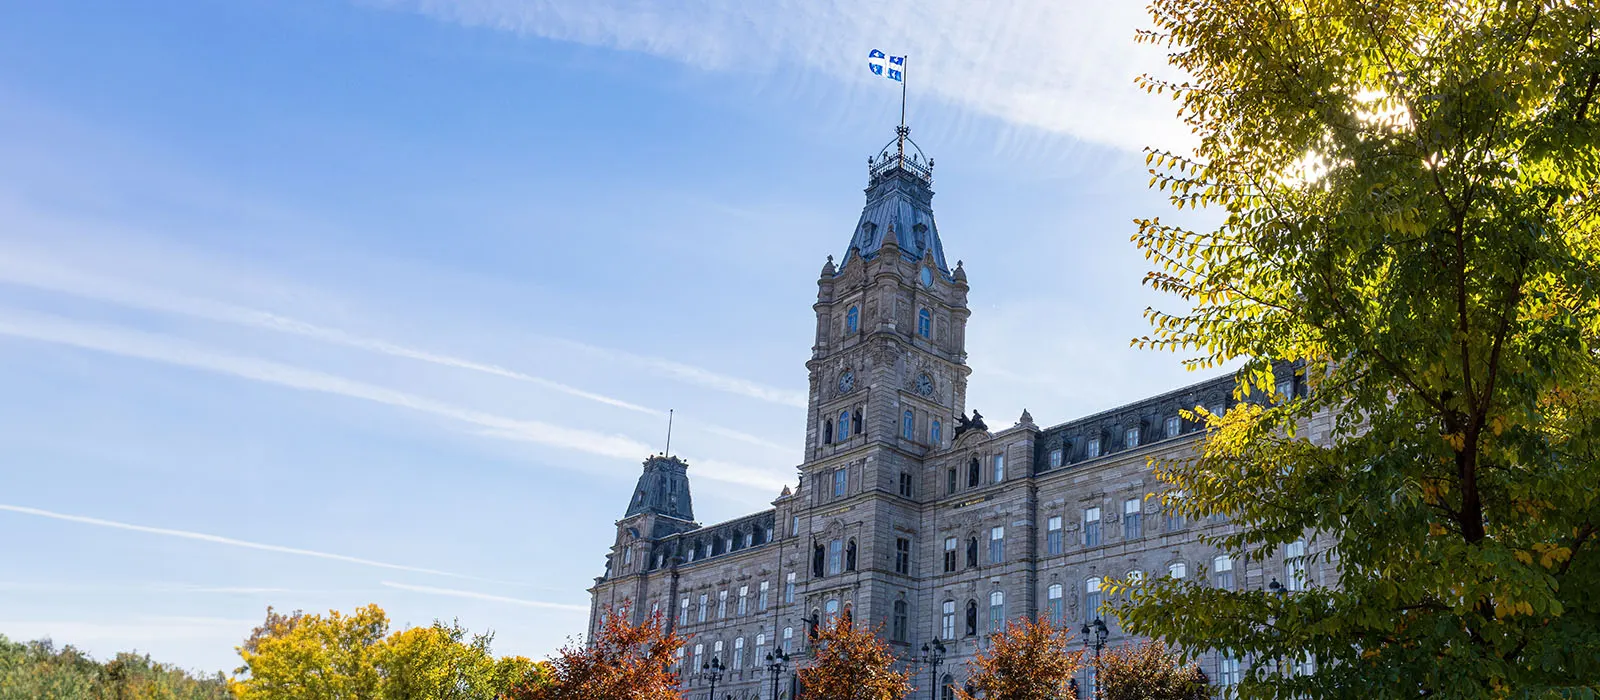 L'édifice du parlement du Canada en été.